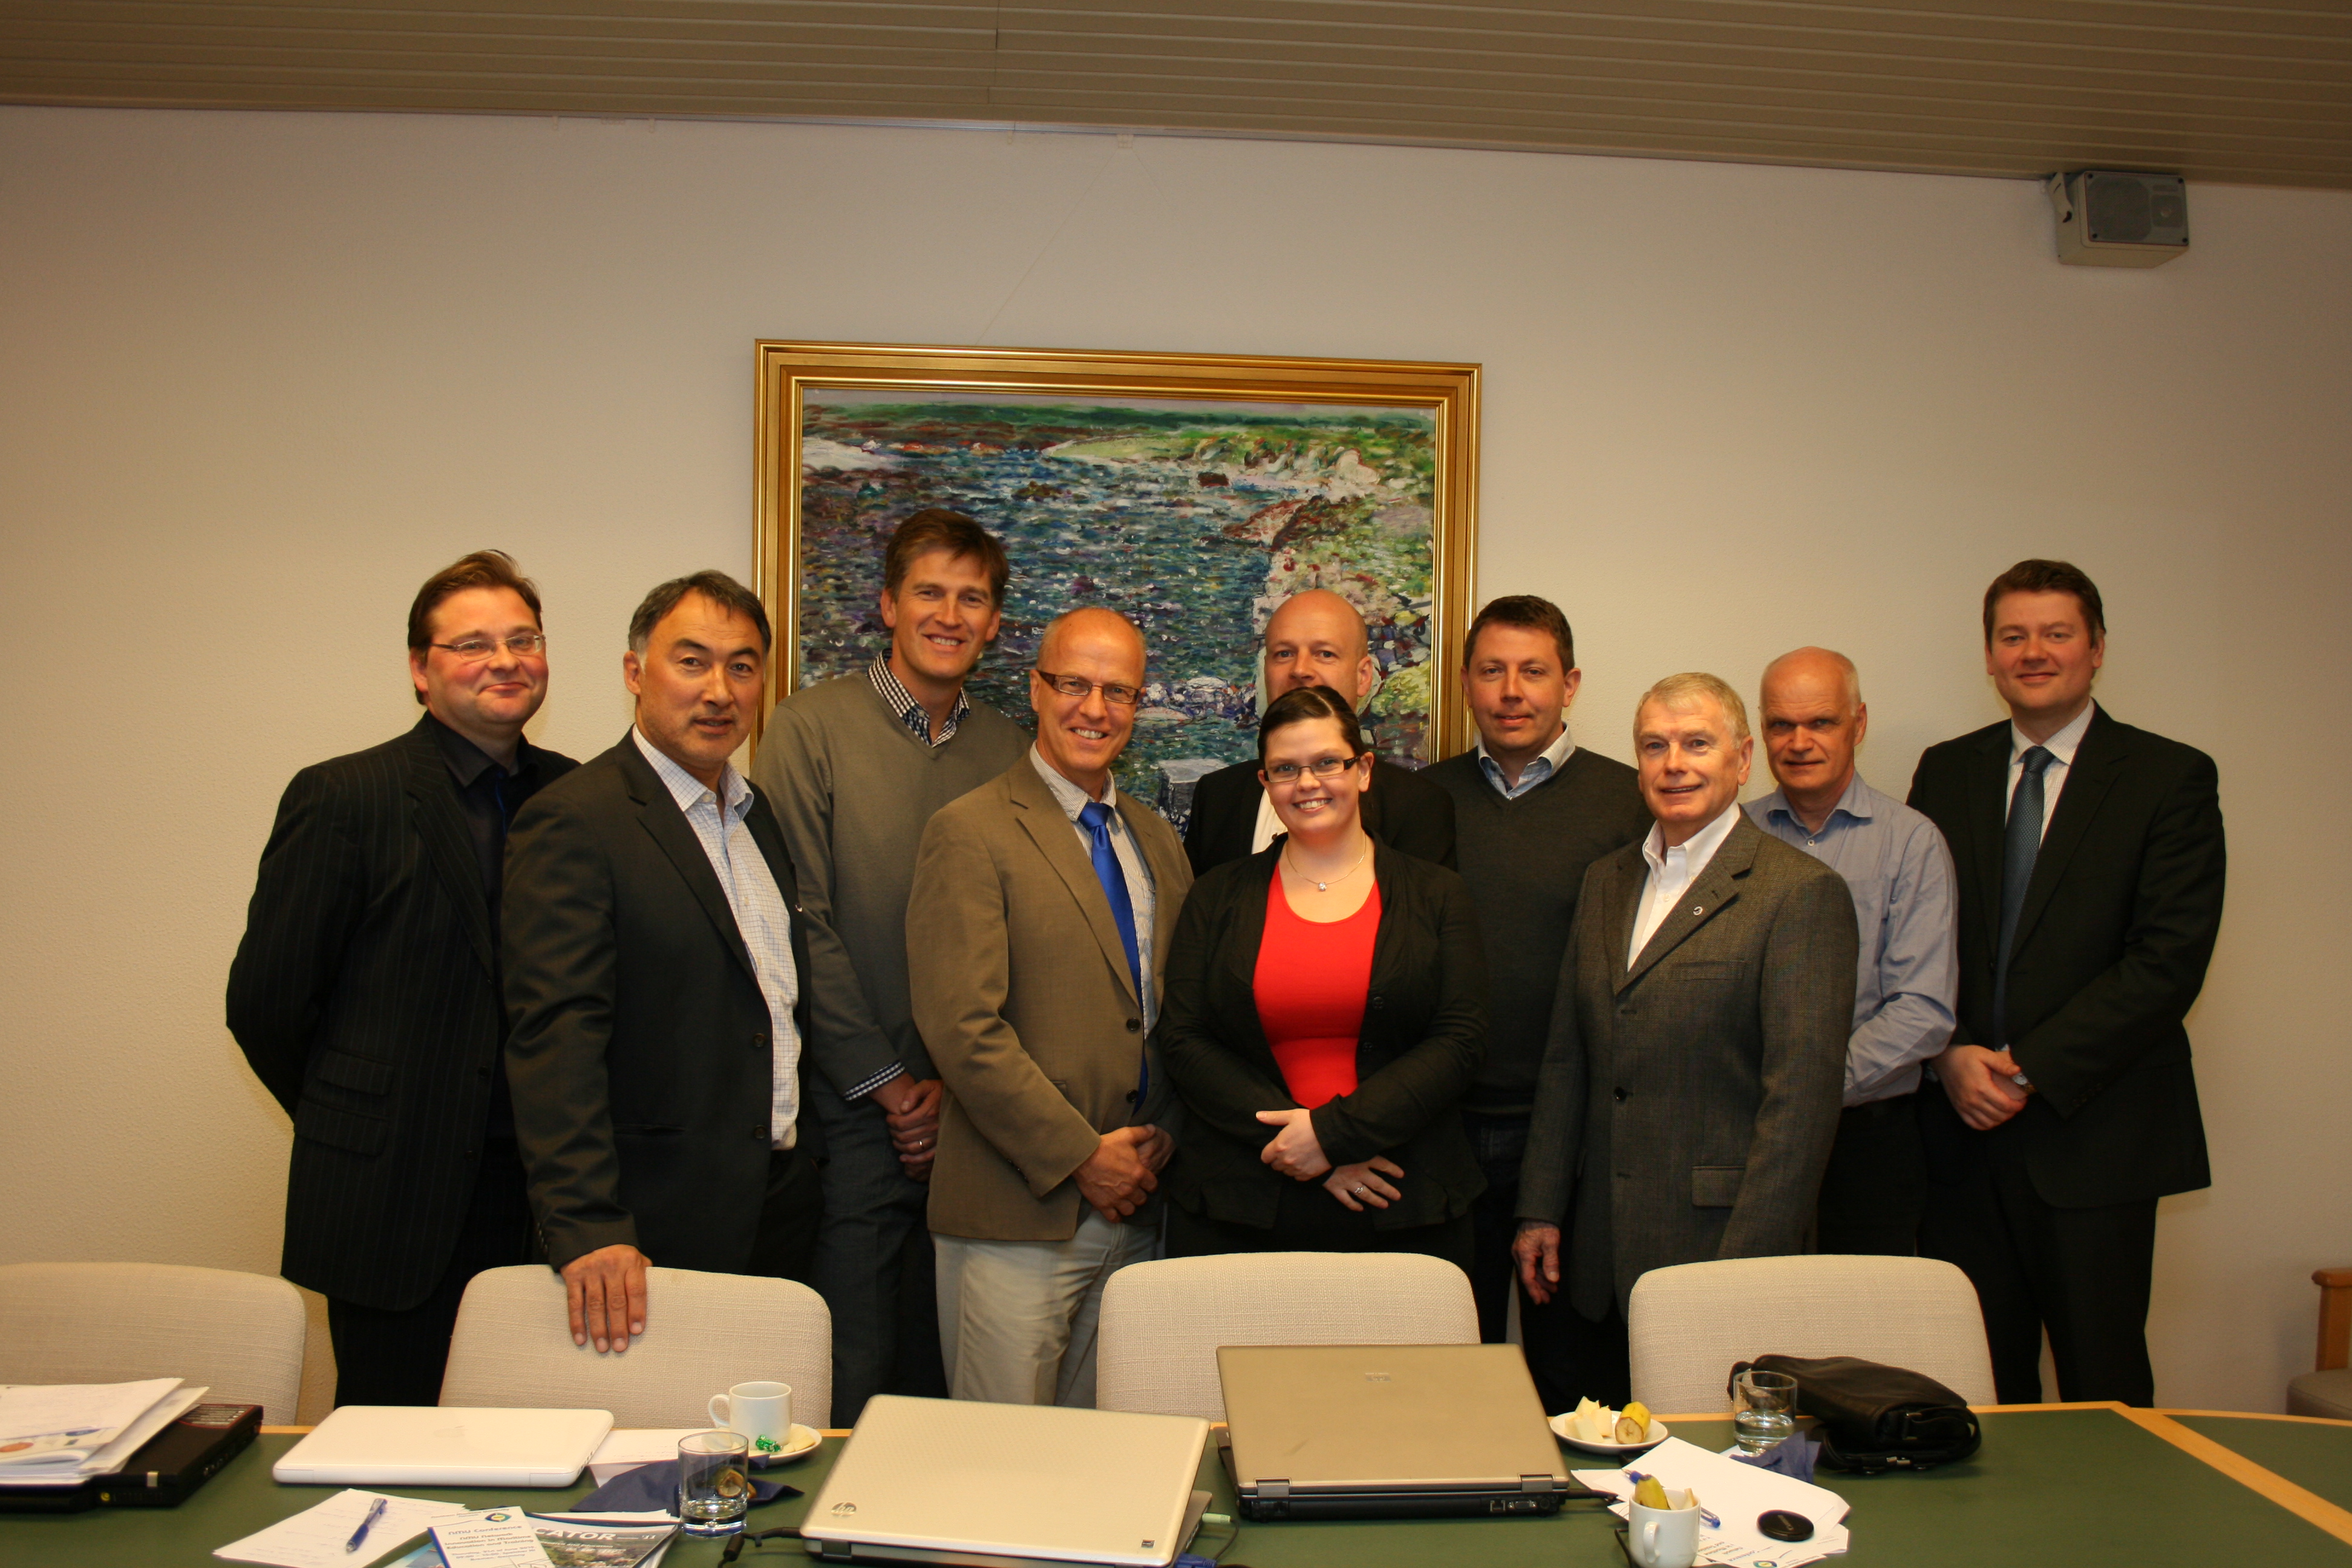 Successful meeting of North Atlantic Marine clusters in Reykjavik